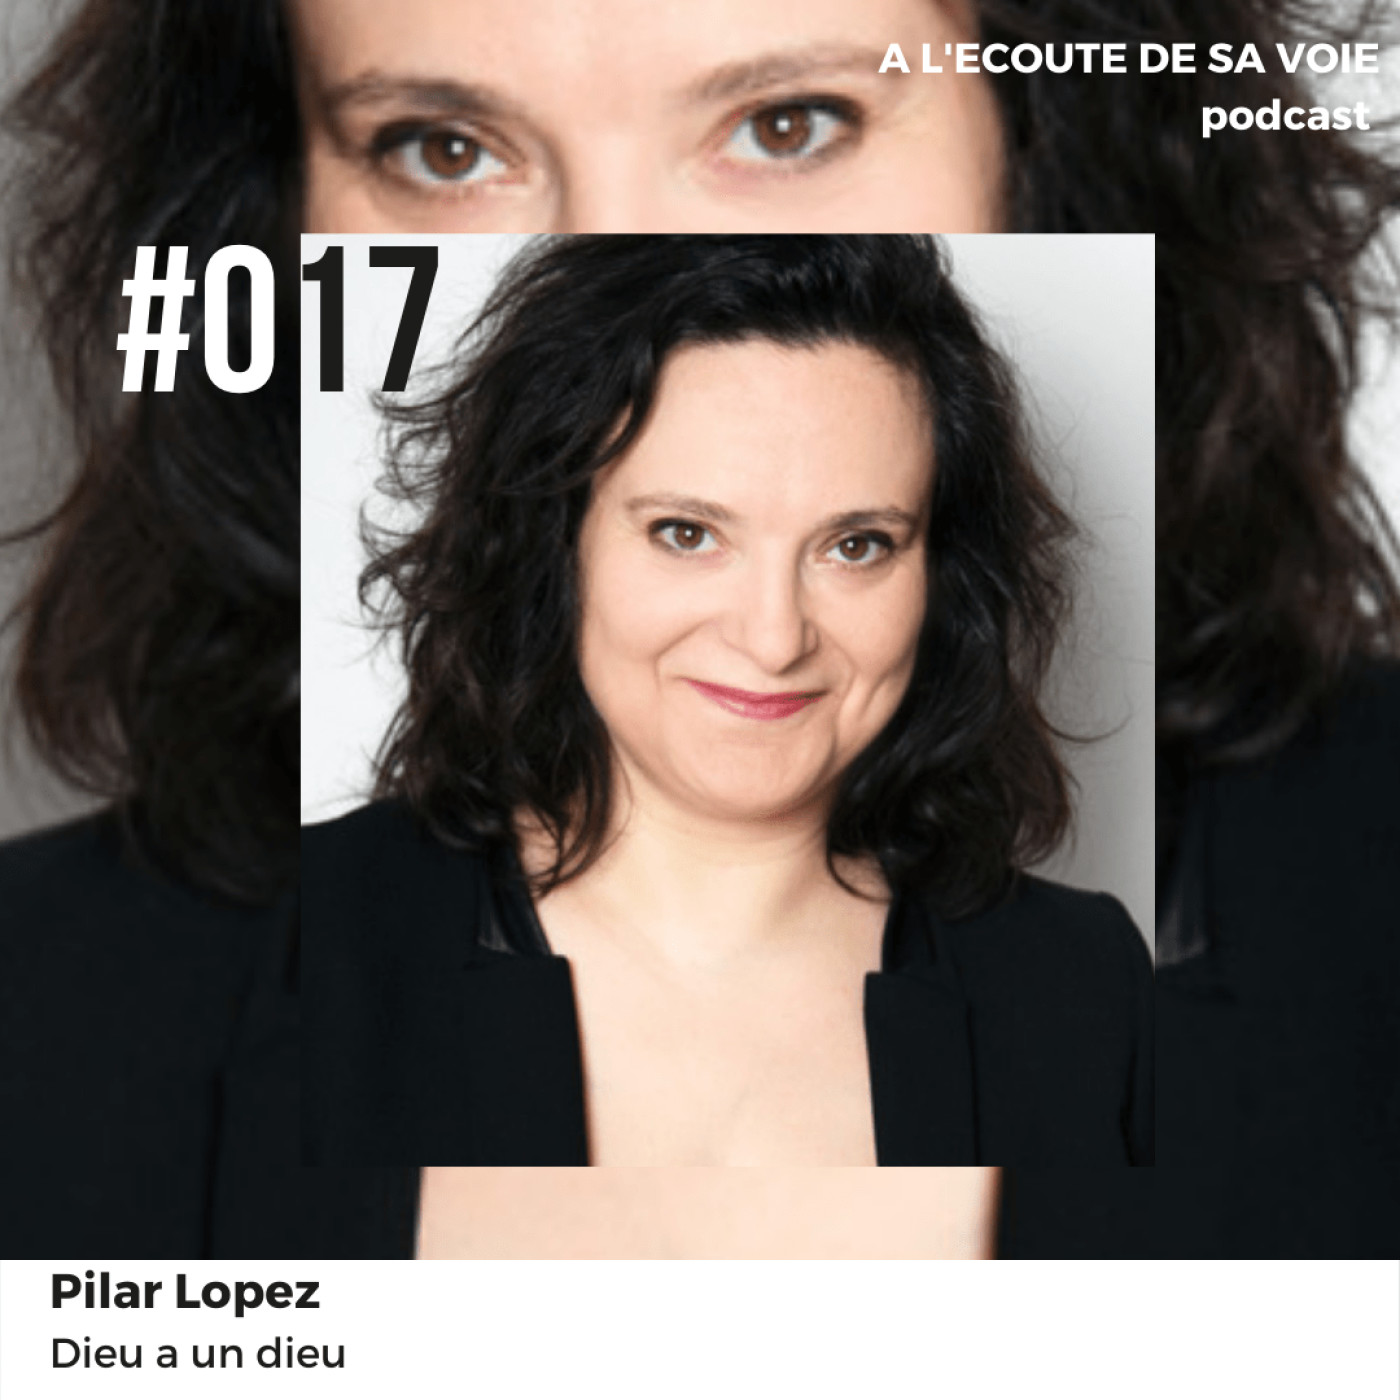 #017 Pilar Lopez - Dieu a un dieu